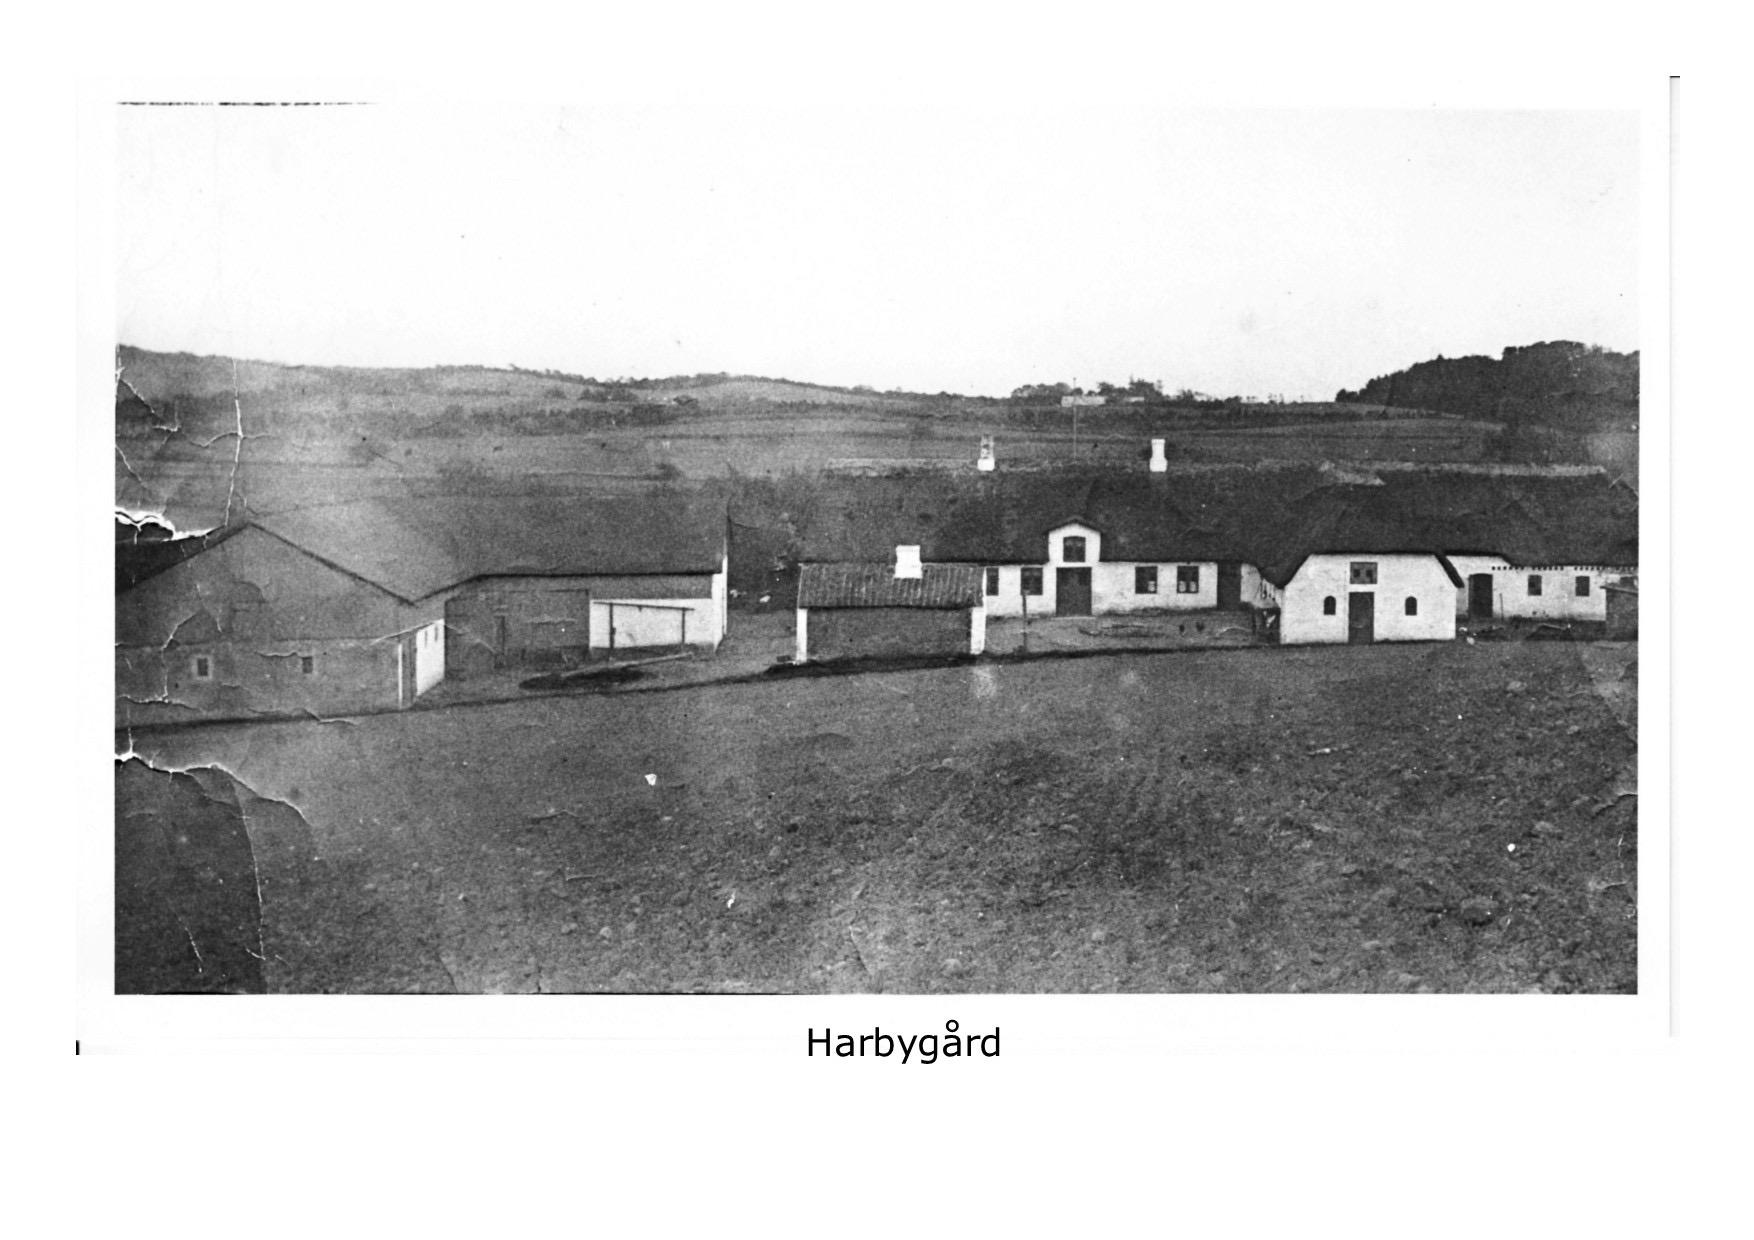 Harbygård, 1900 